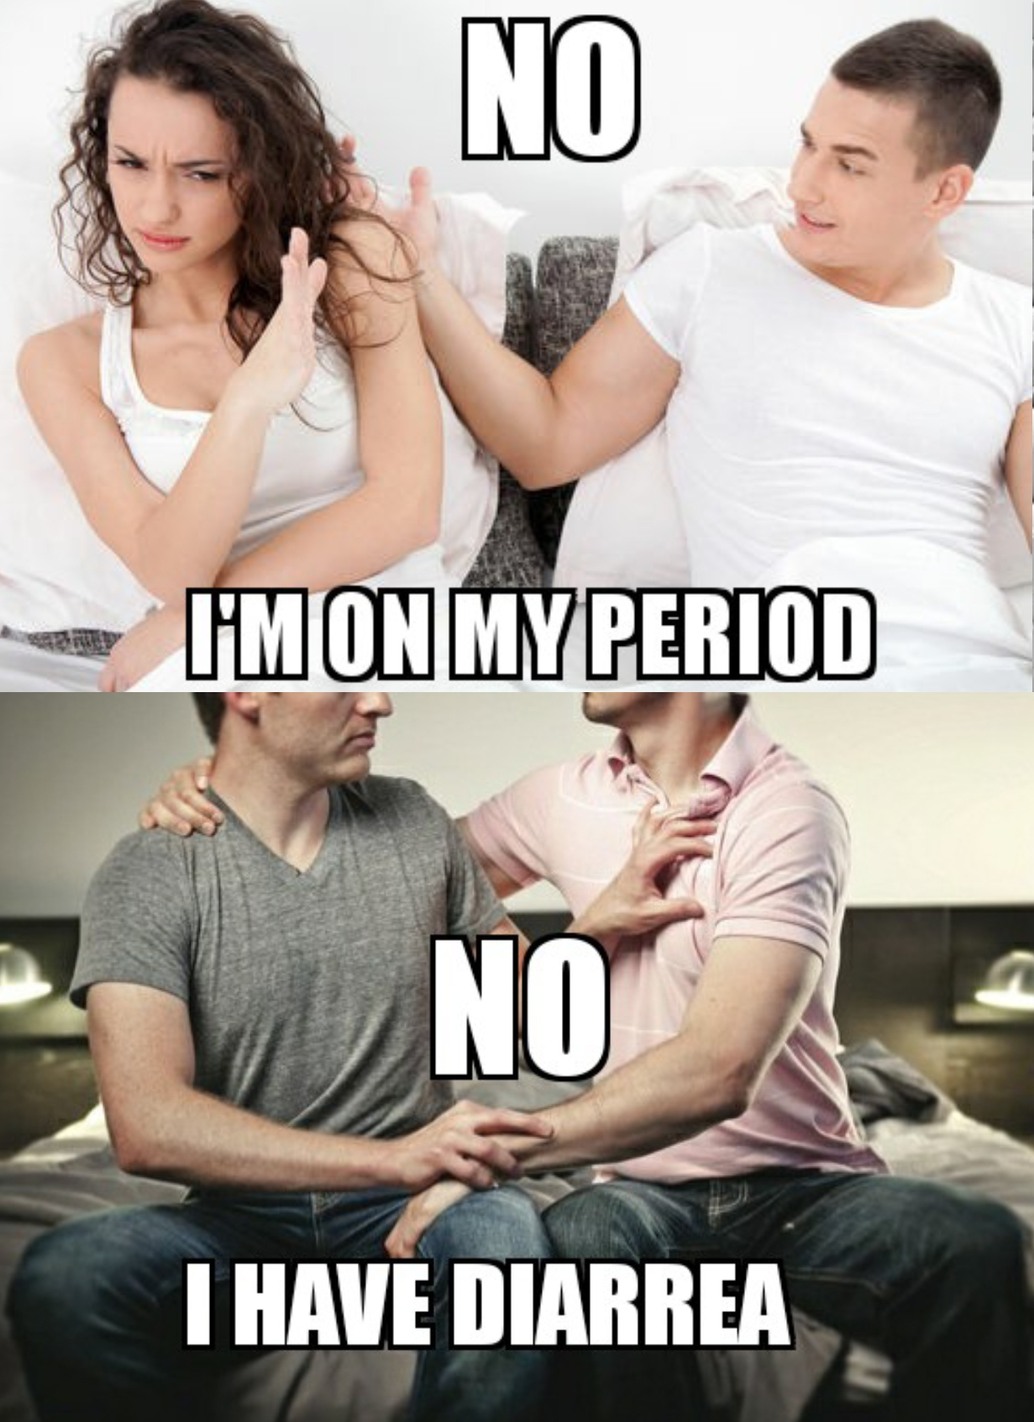 Relationships gay vs straight - meme